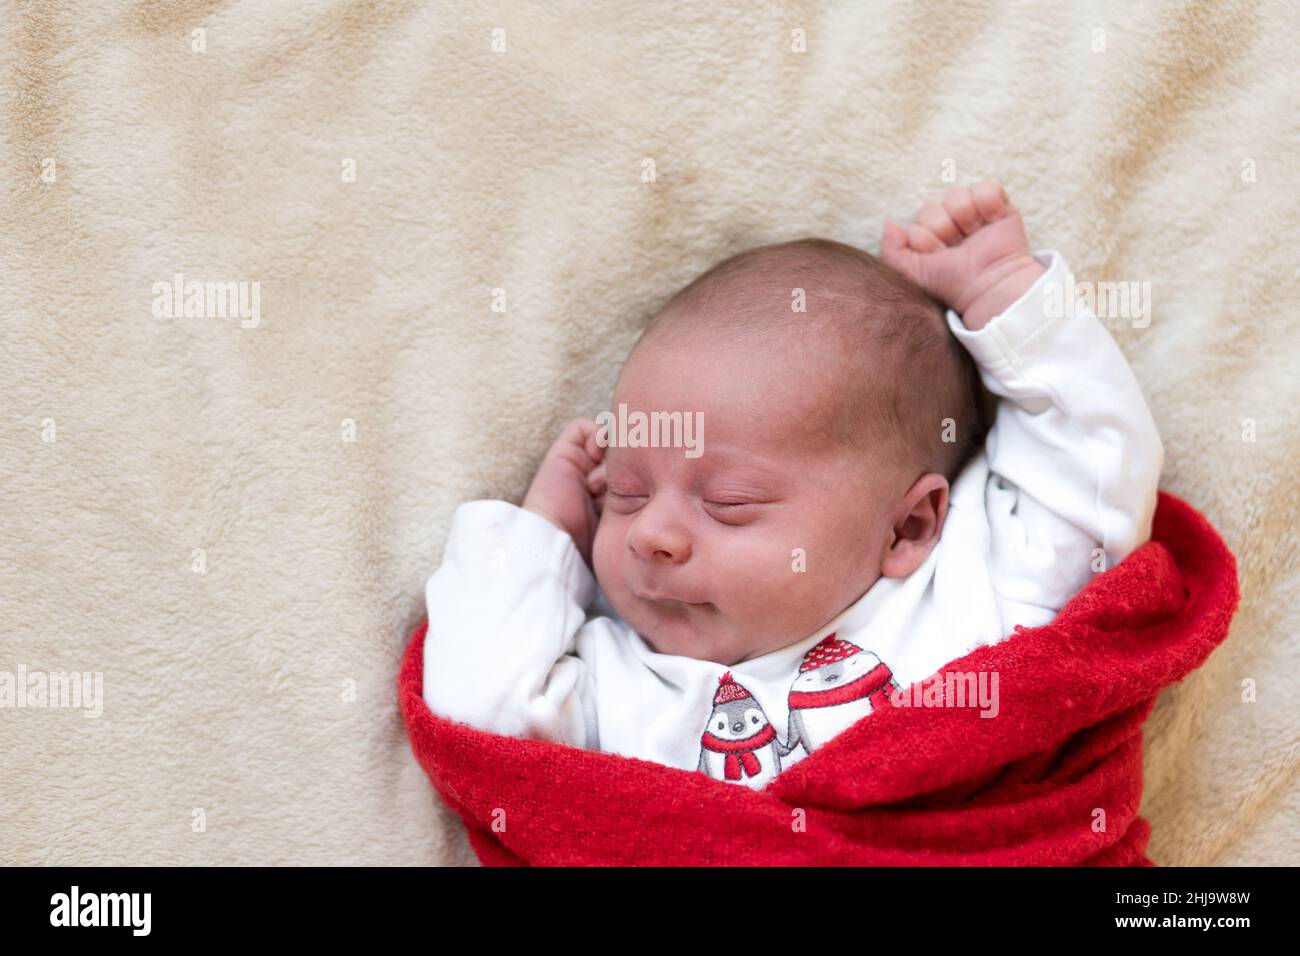 Top View Portrait First Days of Life Neugeborene Niedliche schlafende Baby in Pyjamas in Red Winper Teppich auf weißem weichen Hintergrund gewickelt. Frohe Weihnachten, Glücklich Stockfoto